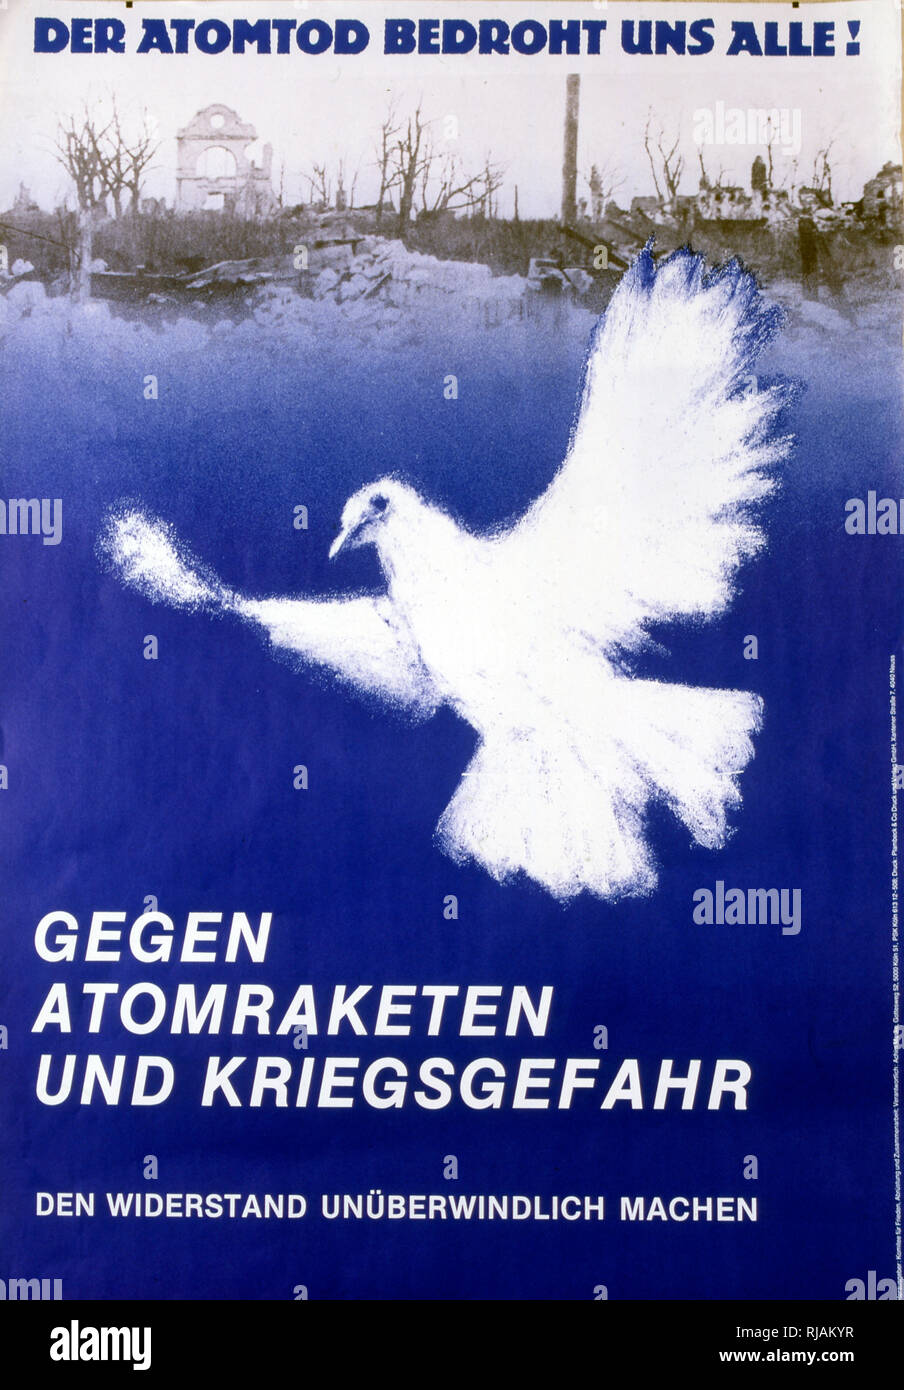 Der atomtod bedroht alle électionné' 'la mort atomique menace tous les' 1983, l'anti-guerre nucléaire, une affiche publiée par le Comité allemand pour la liberté Banque D'Images